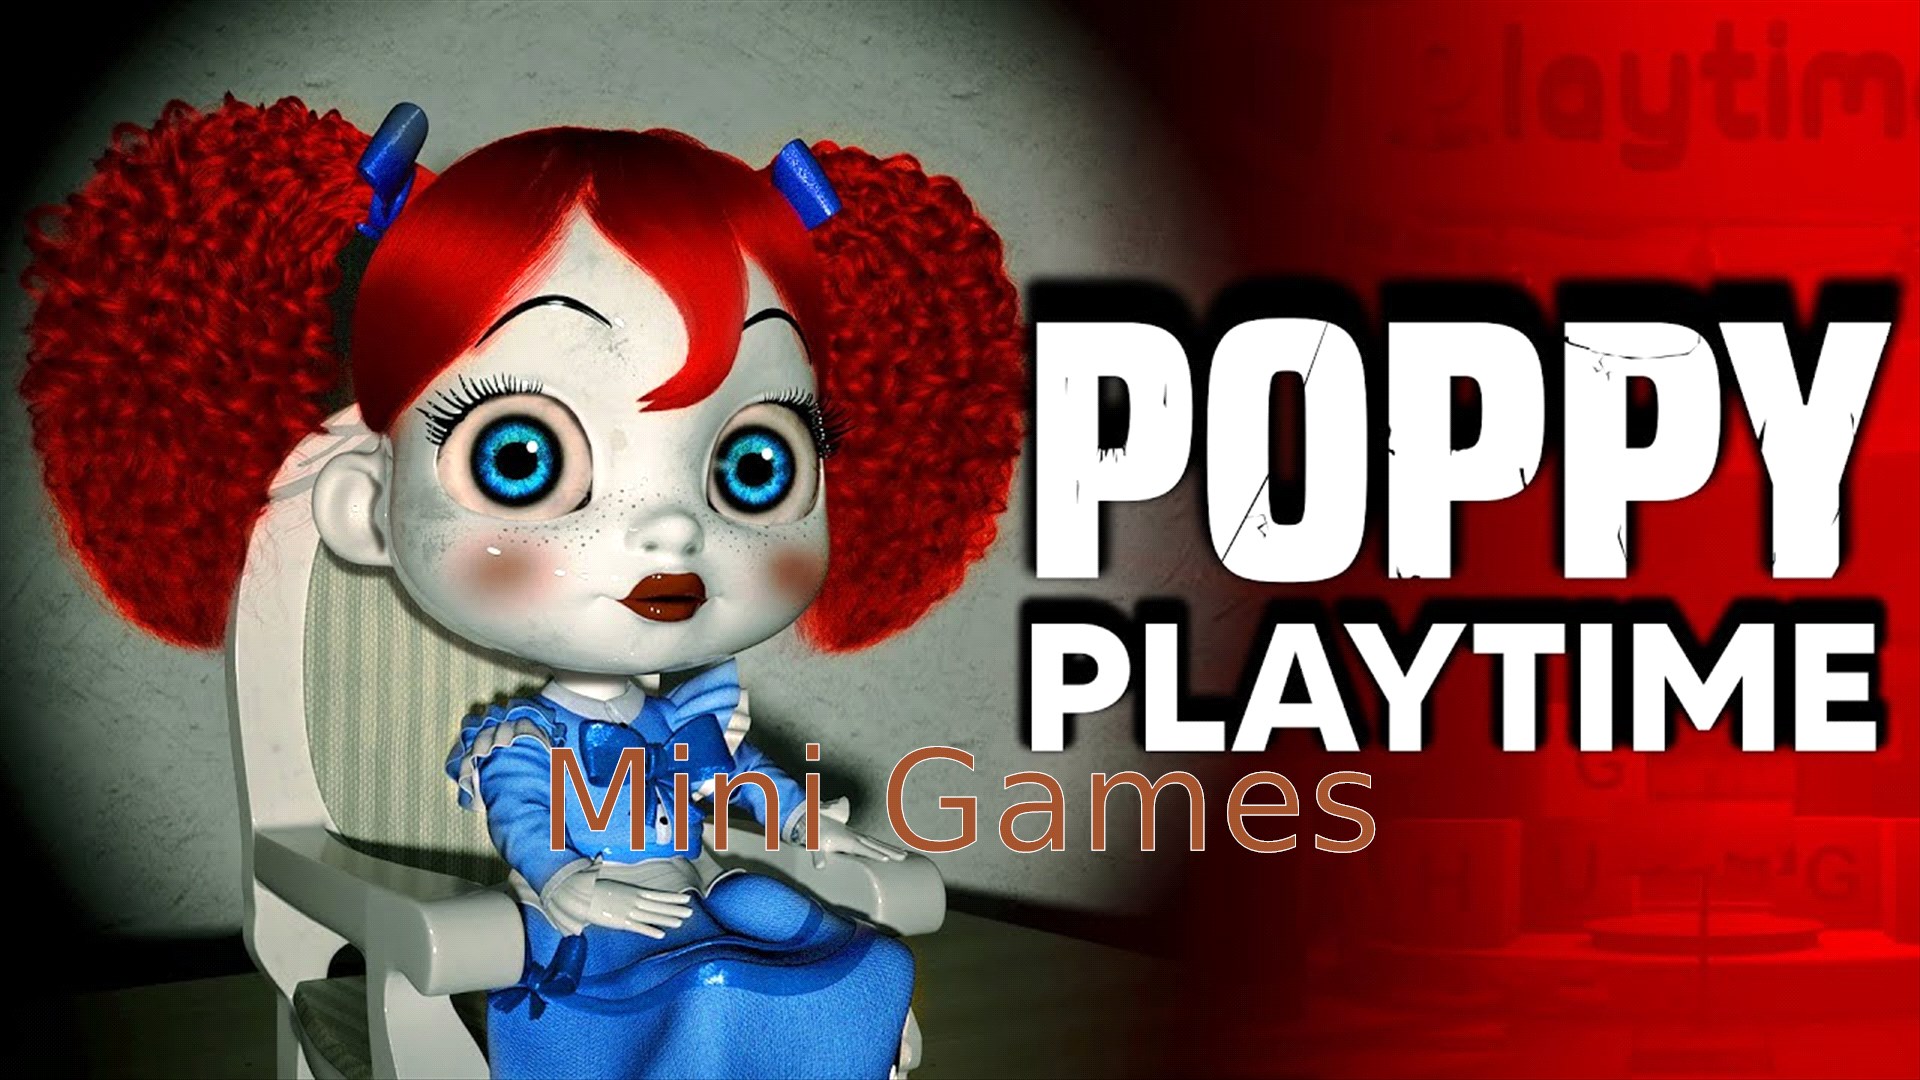 Buy Mini Games For Poppy Playtime   Microsoft Store en SA